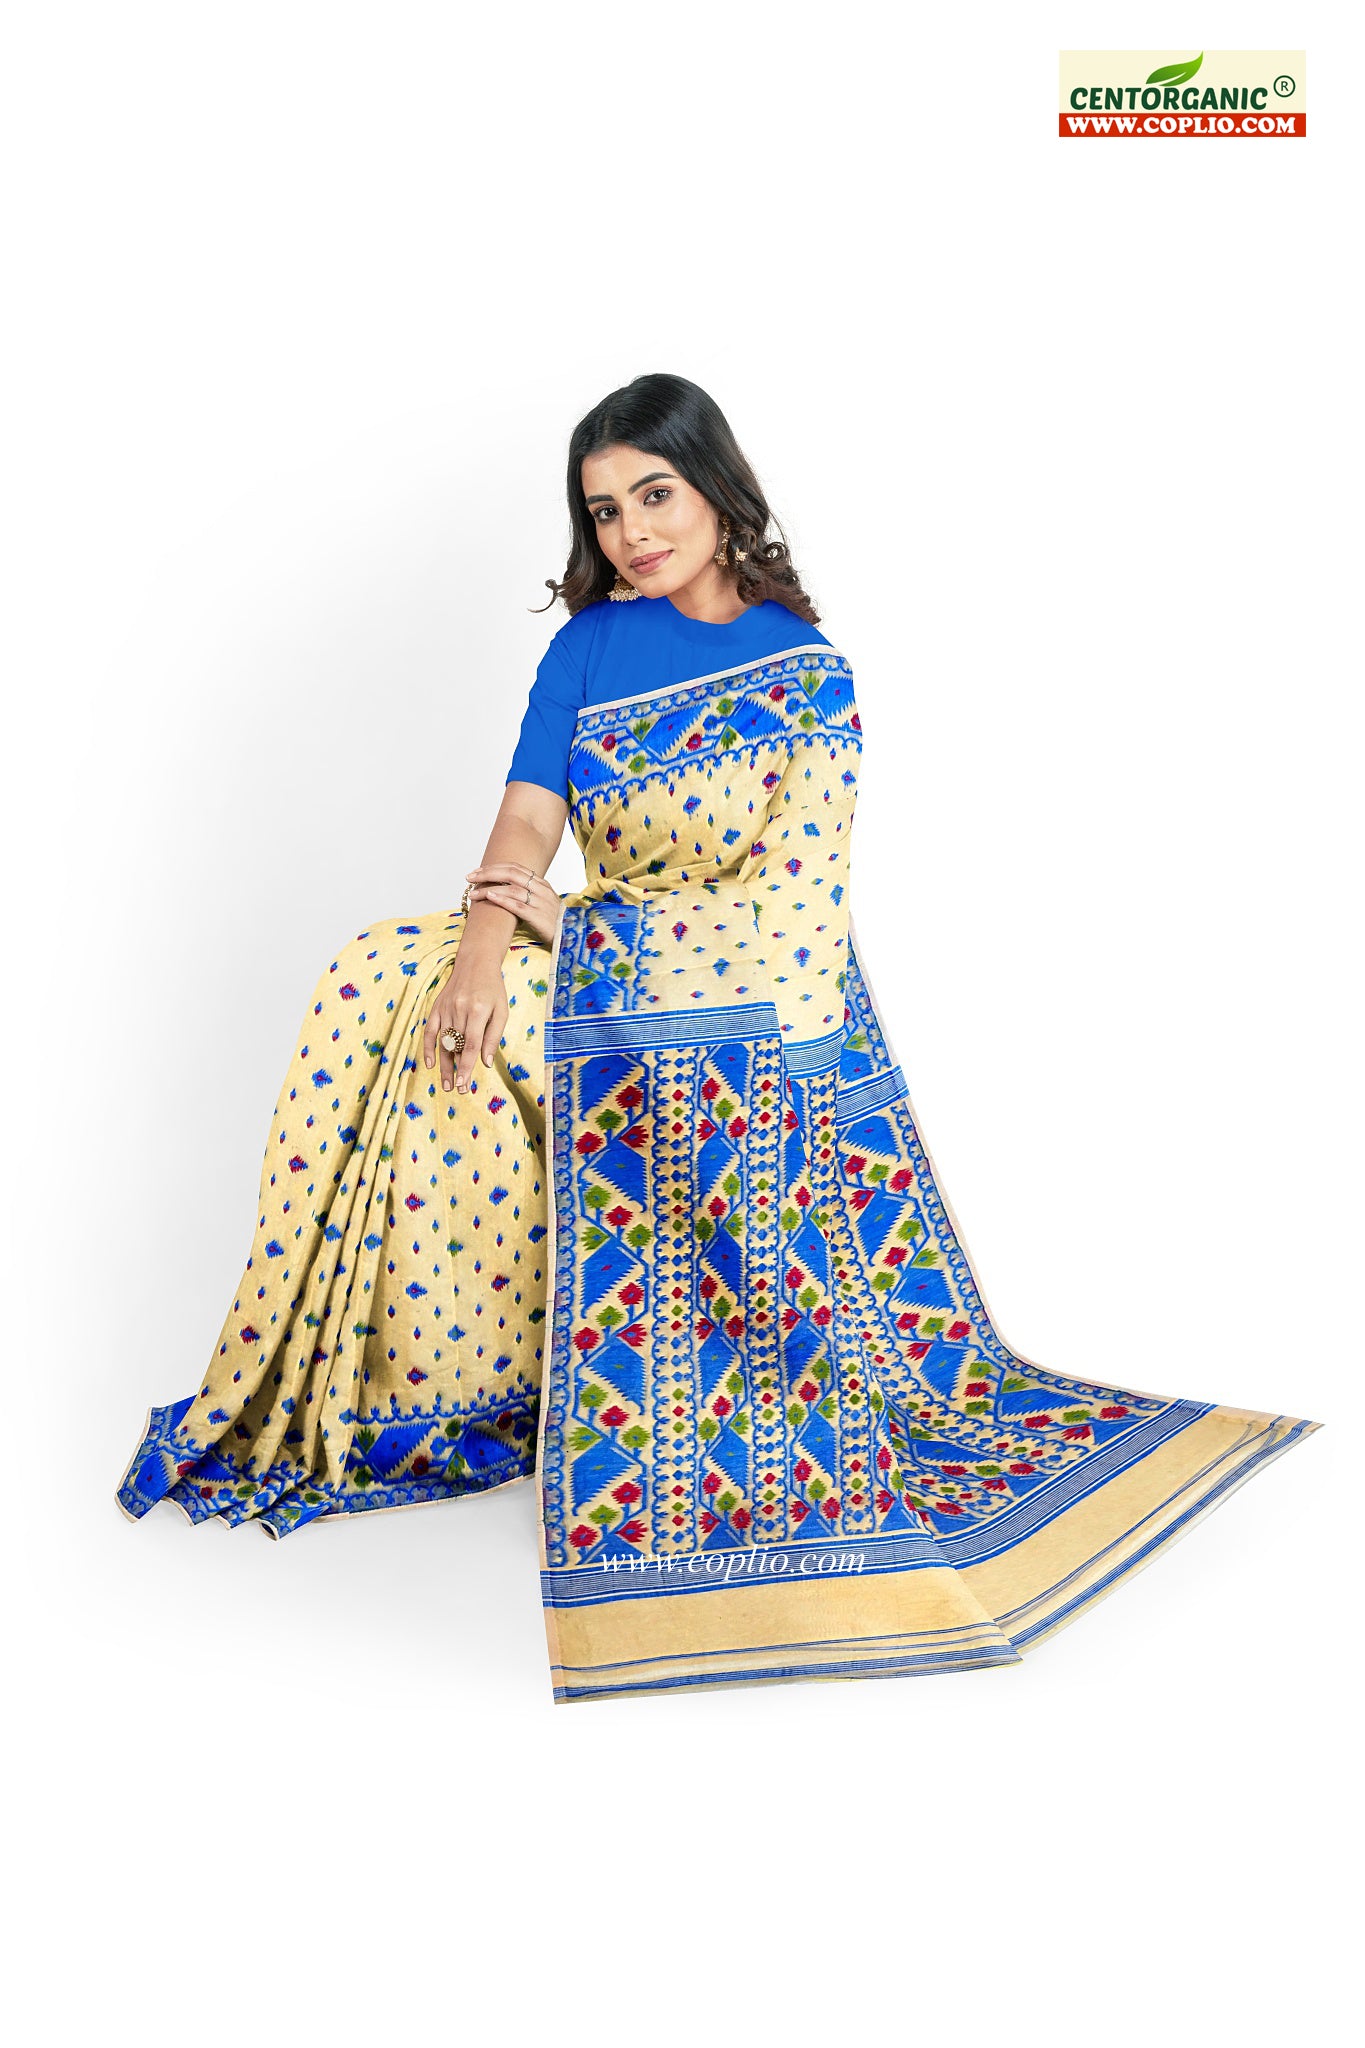 Centorganic Dhakai Soft Jamdani Bengal saree for women, All Over Weaving Design Korat Jamdani, Without Blouse Piece